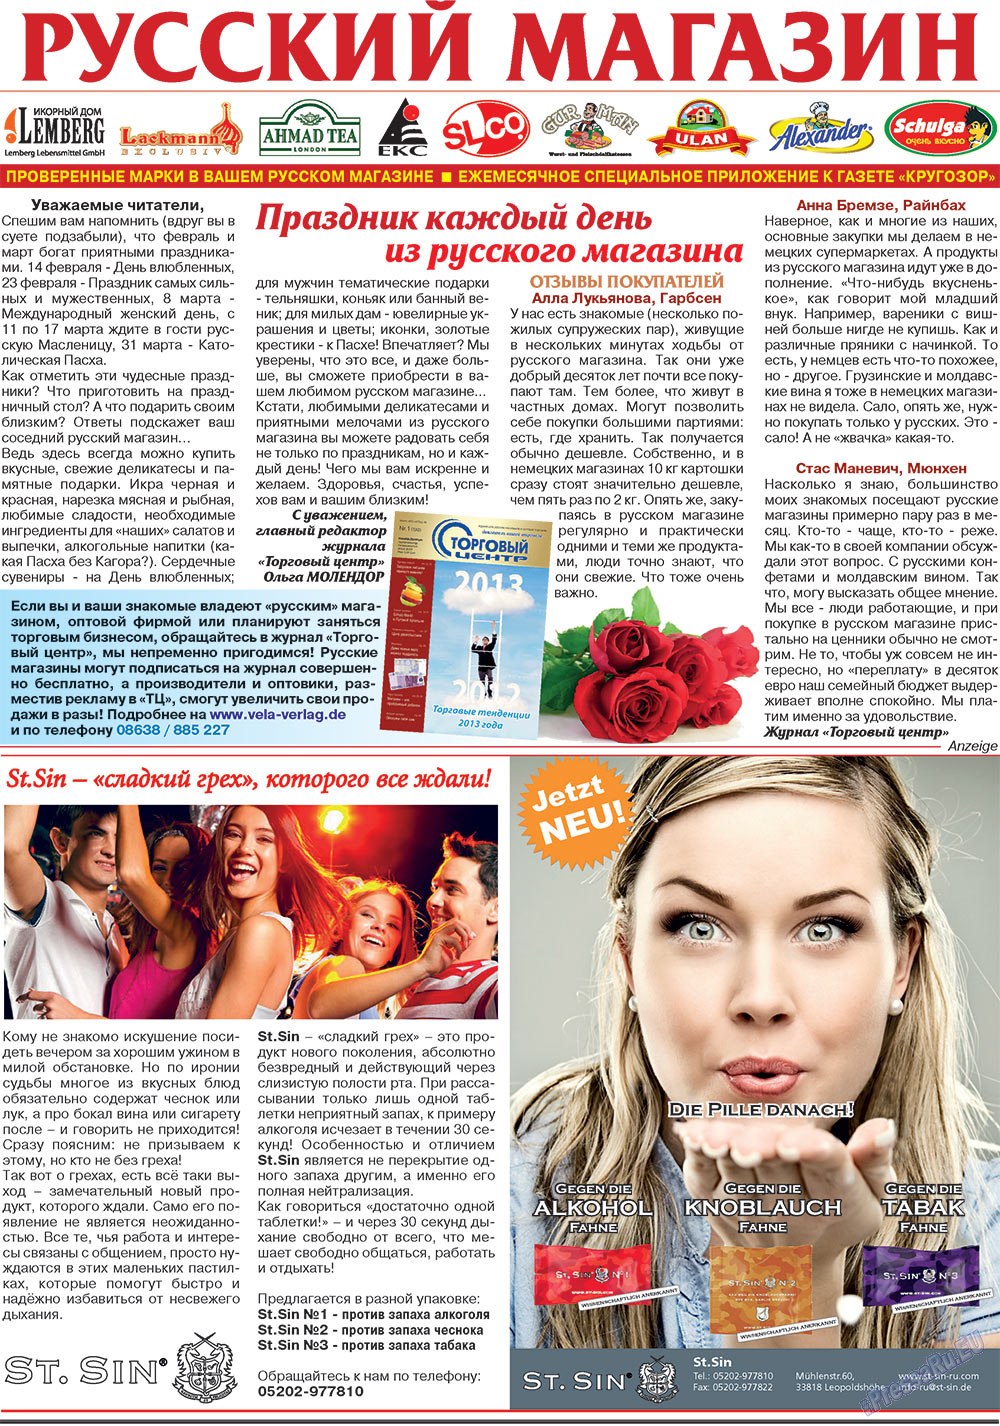 Кругозор (газета). 2013 год, номер 2, стр. 23